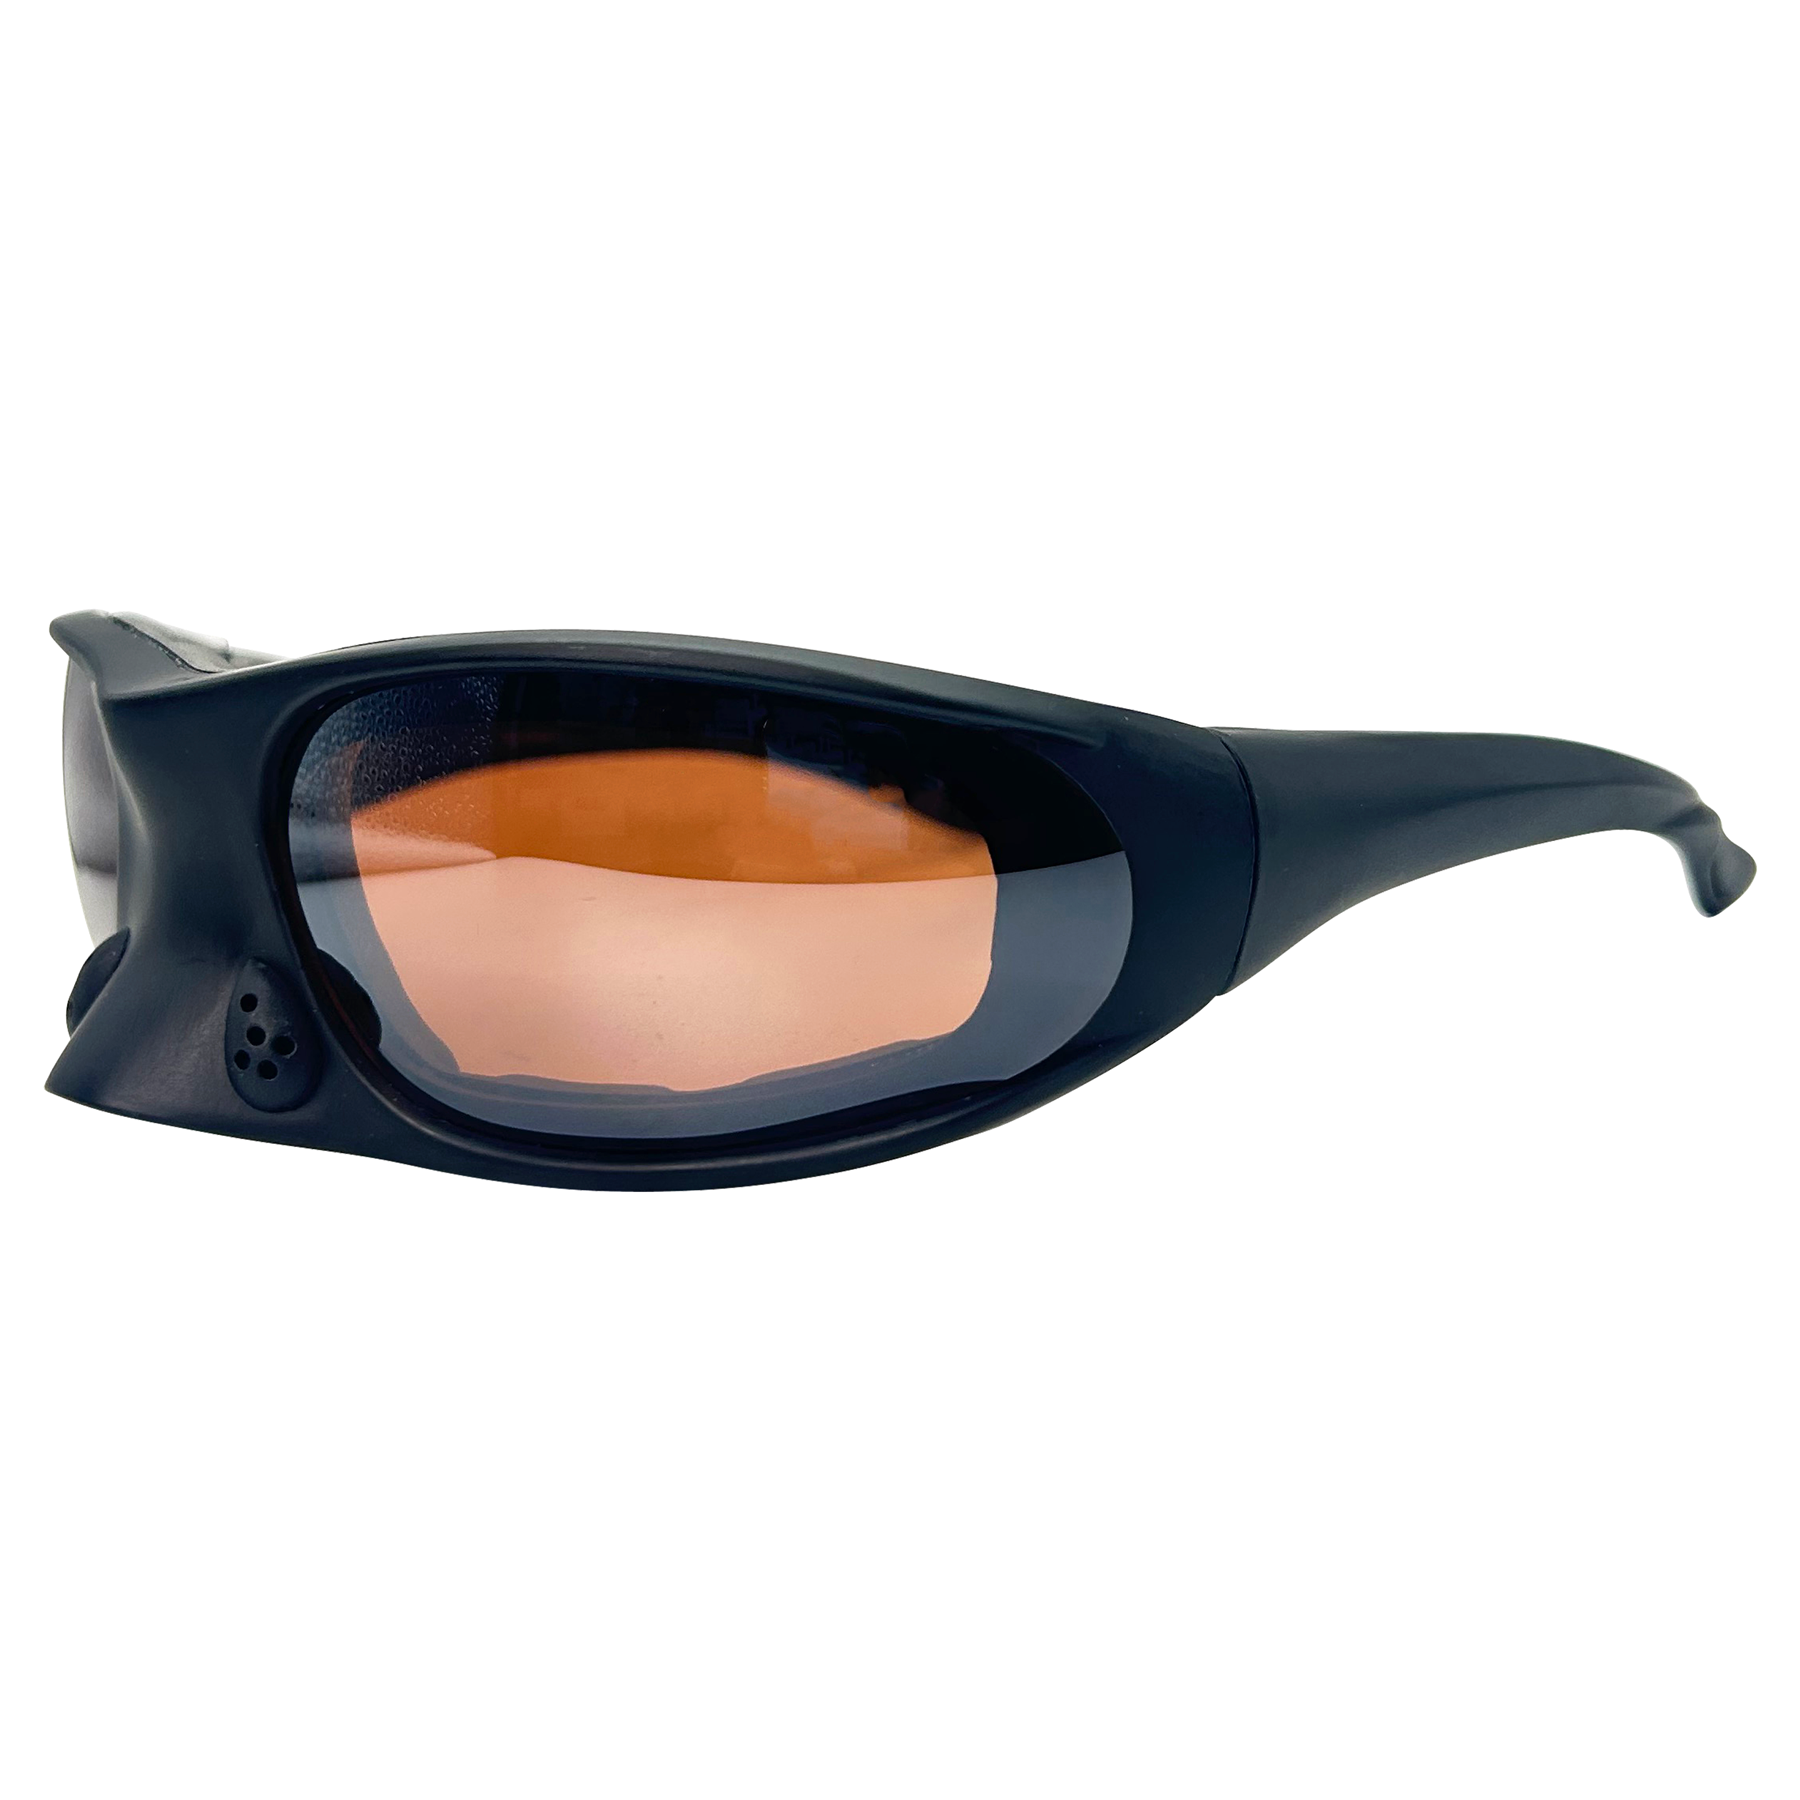 unique sunglasses with nose piece details